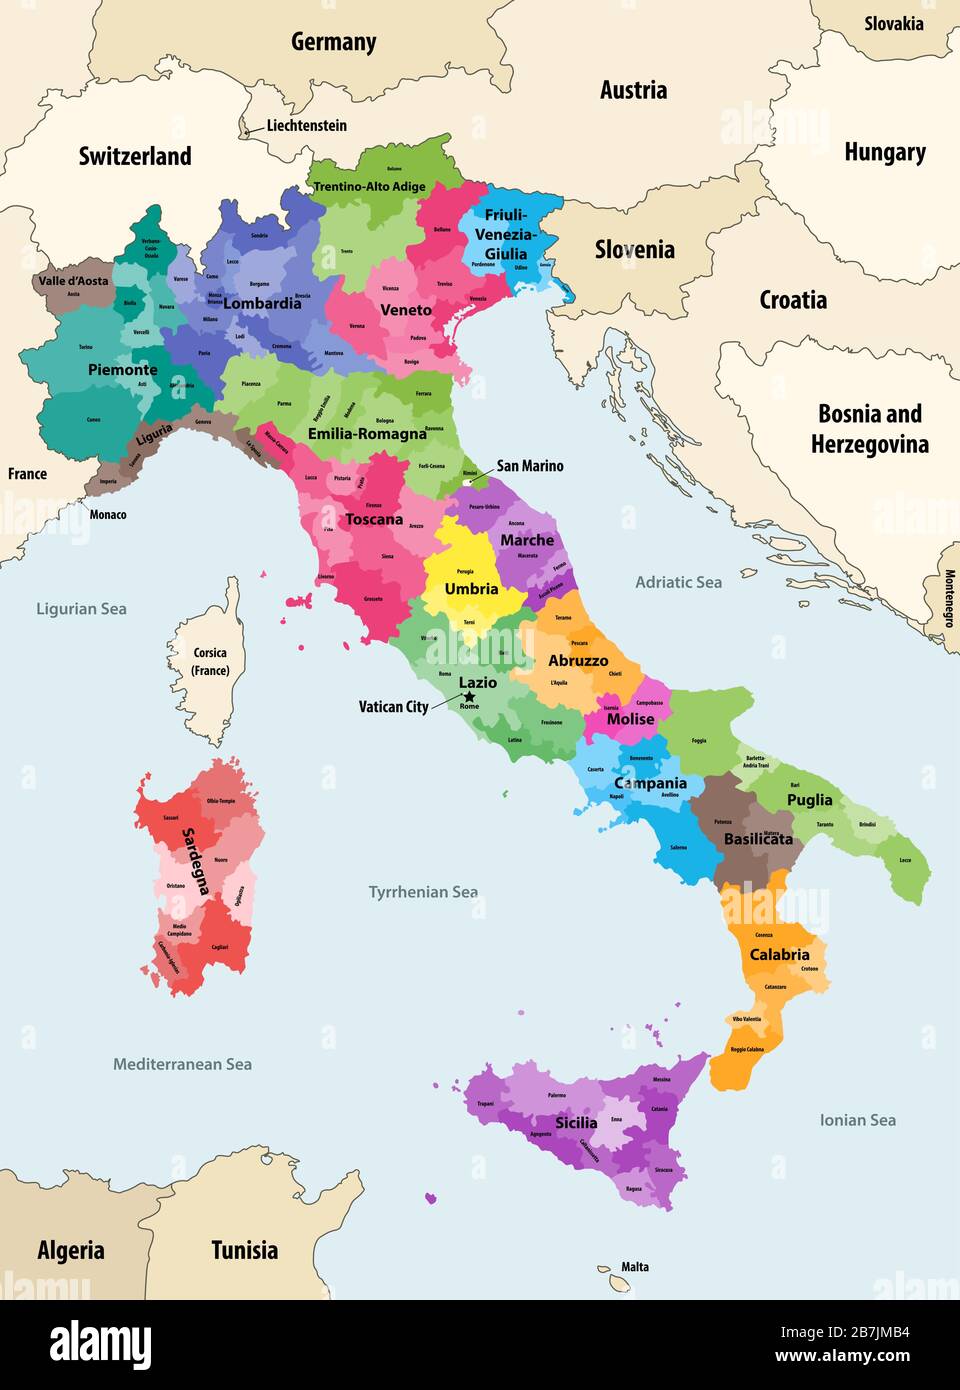 Les provinces italiennes colorées par régions ont une carte vectorielle avec les pays et territoires voisins Illustration de Vecteur